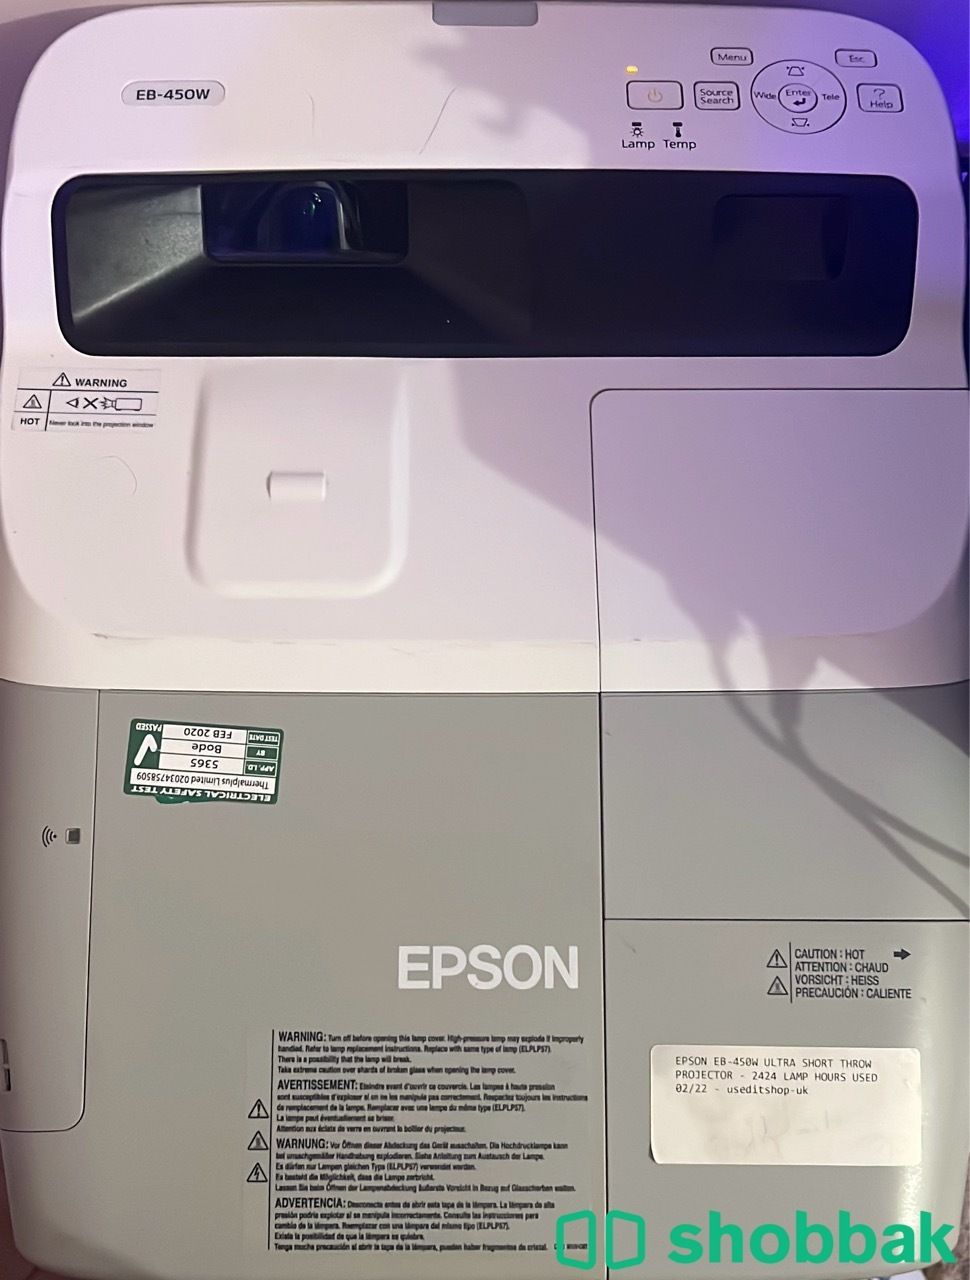 بروجكتر ليزر نضيف من Epson موديل EB-450W للبيع Shobbak Saudi Arabia